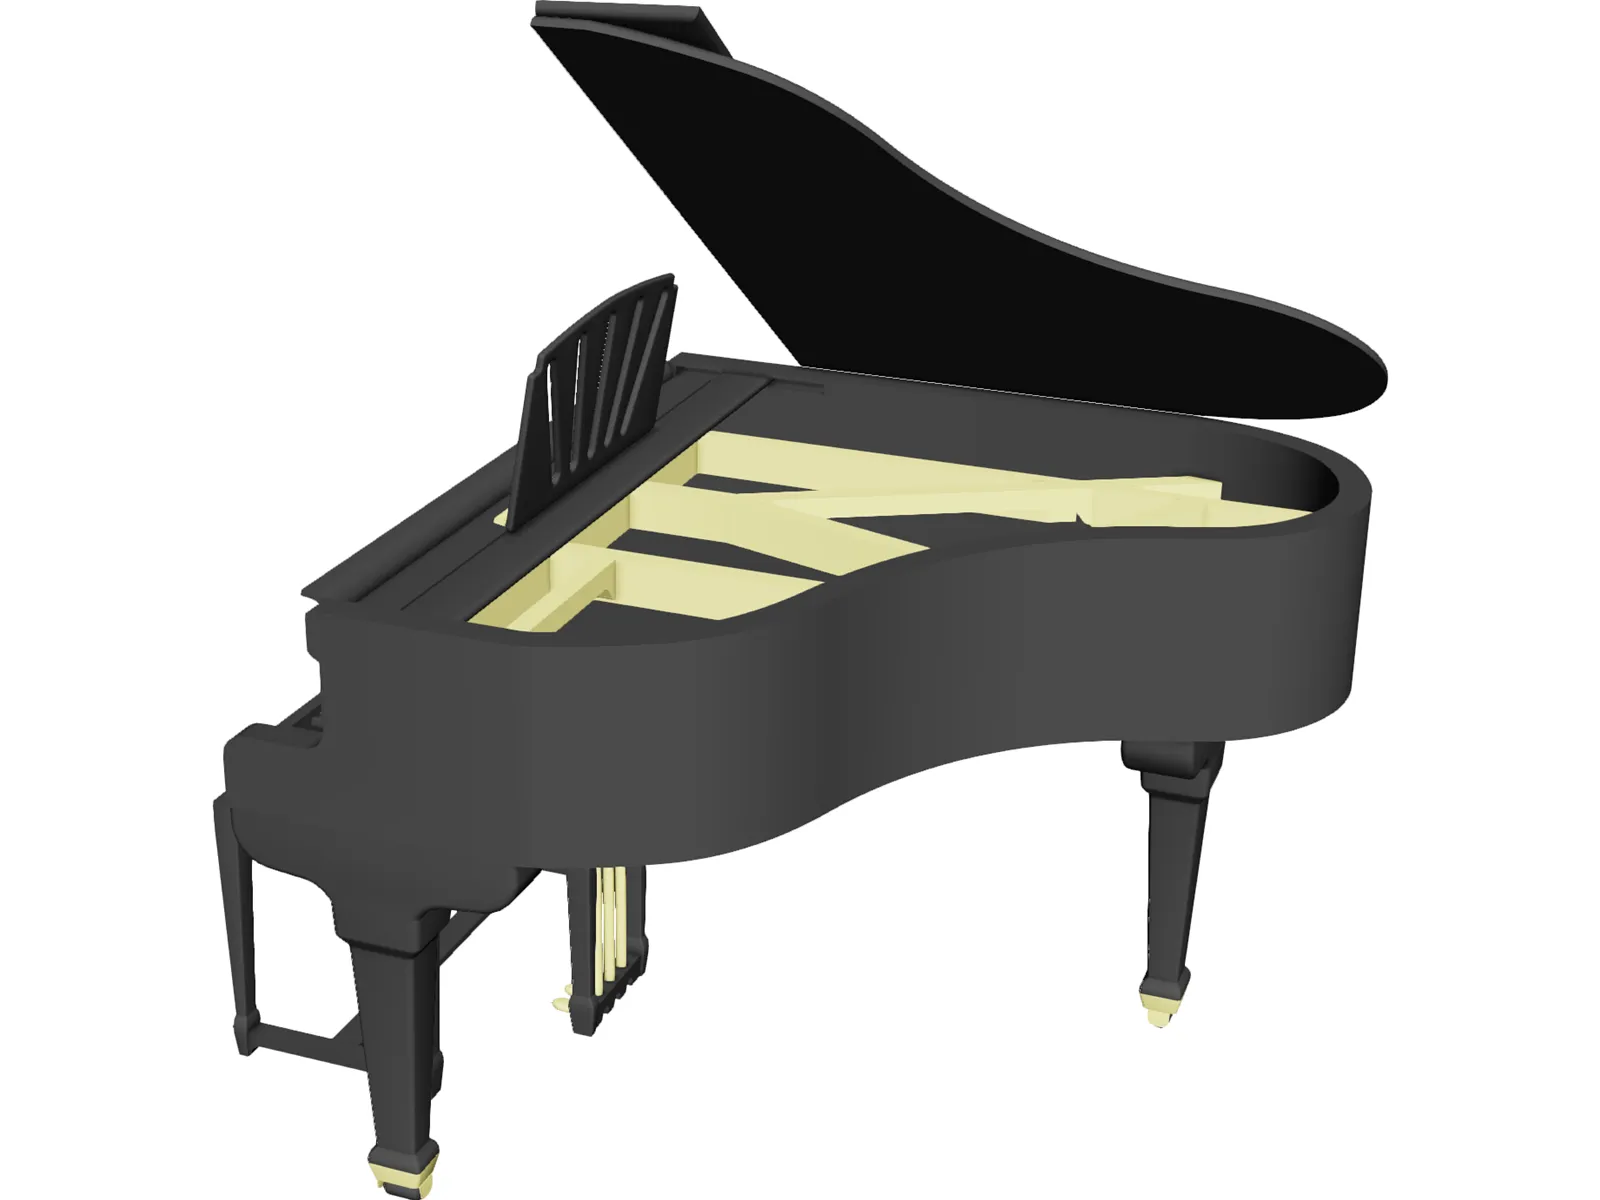 Piano 3D Model - 3DCADBrowser